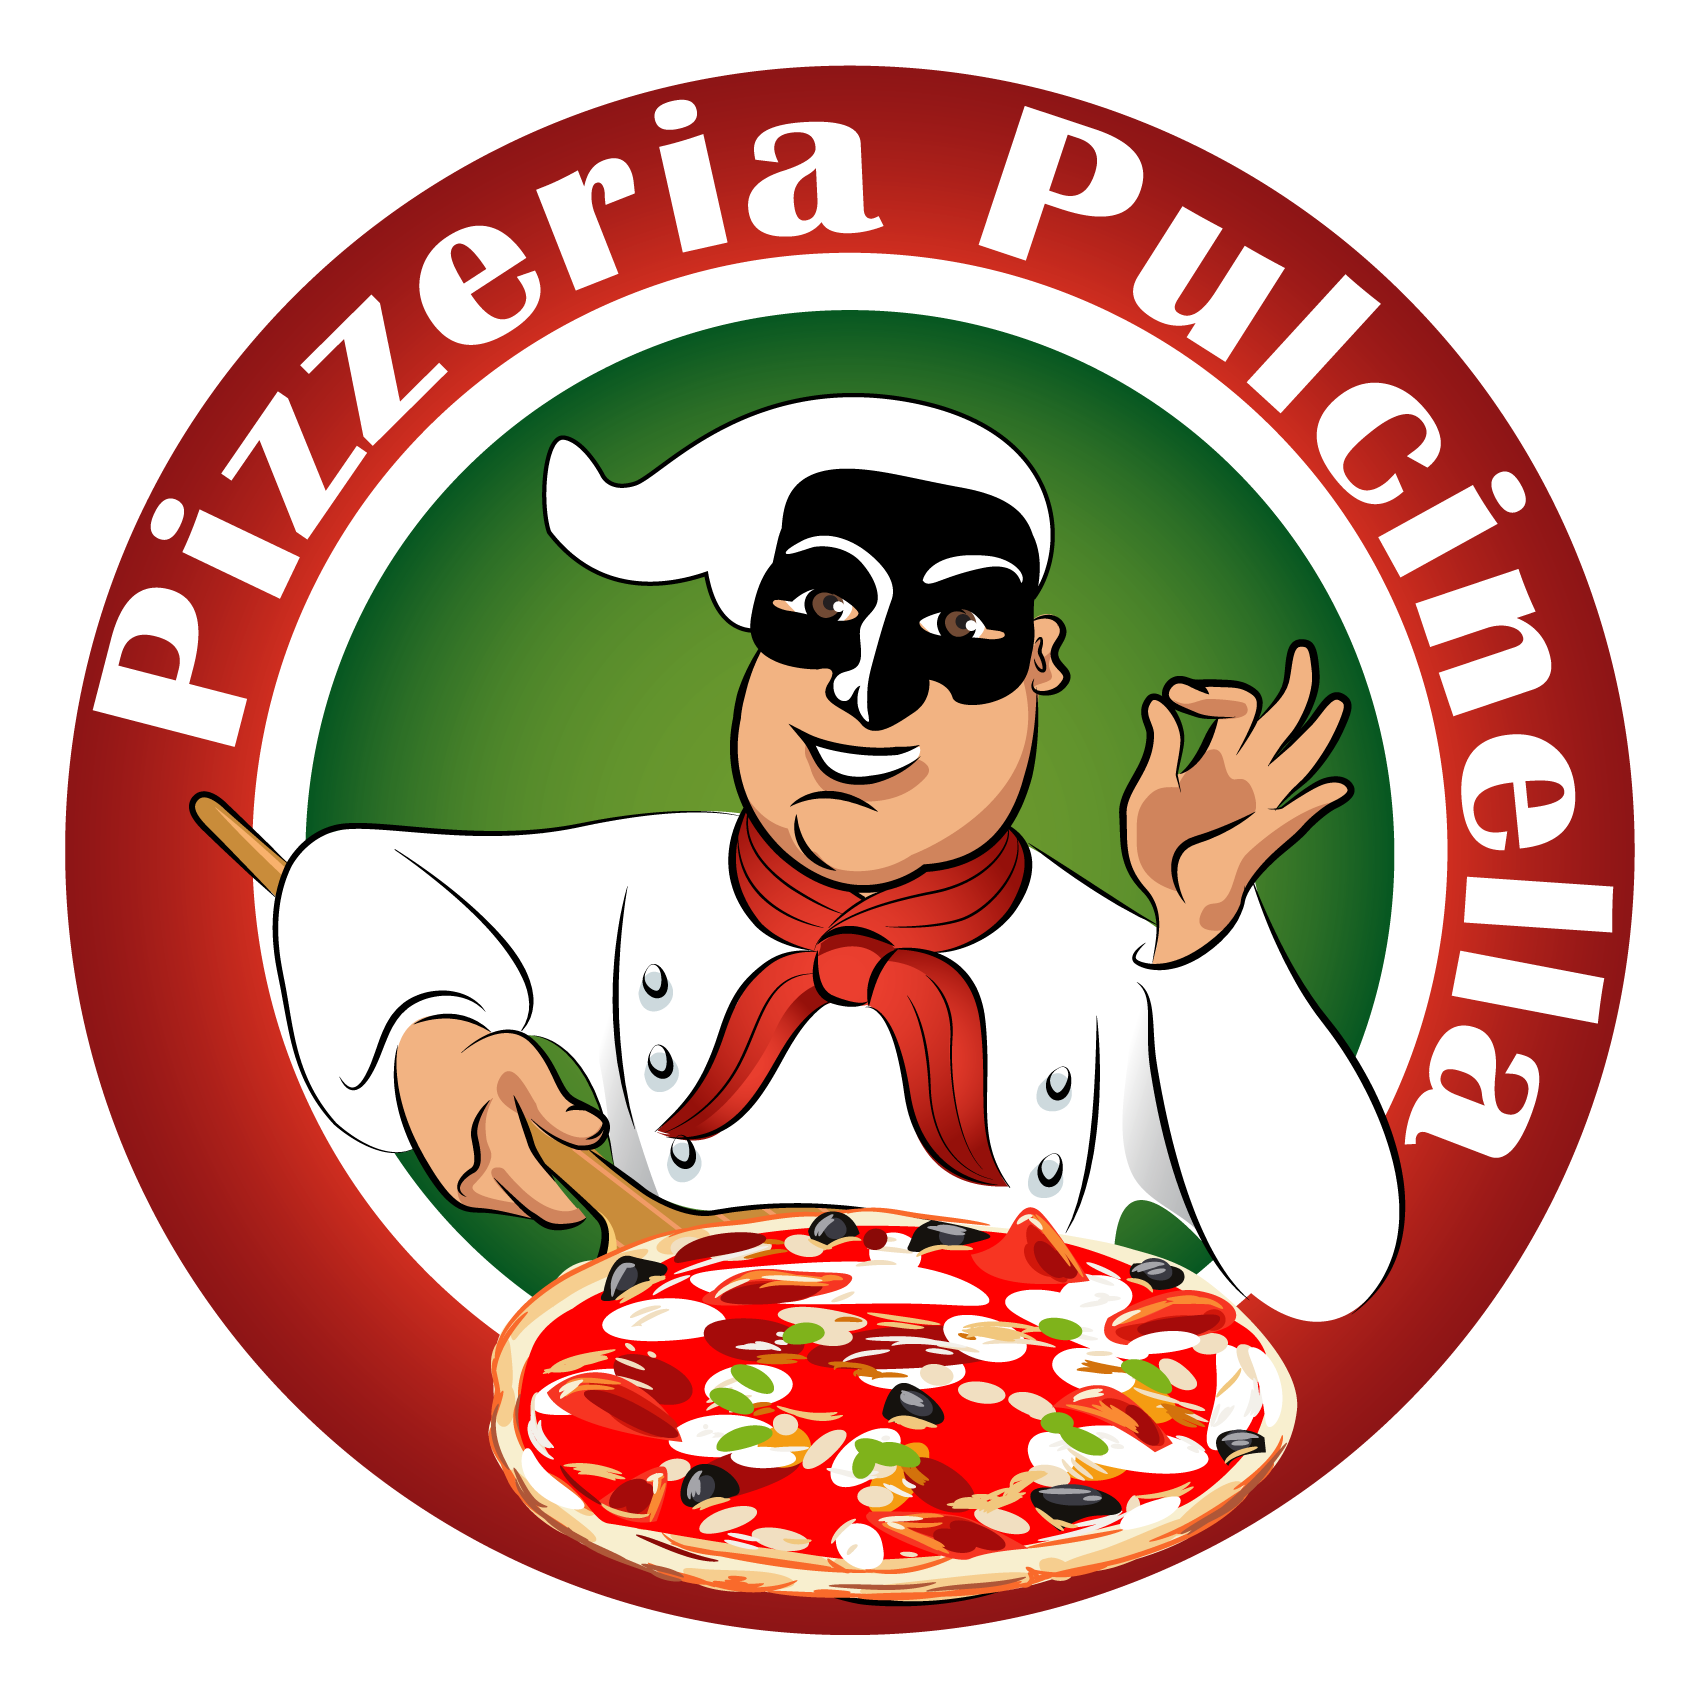 Pizzeria Pulcinella Aosta